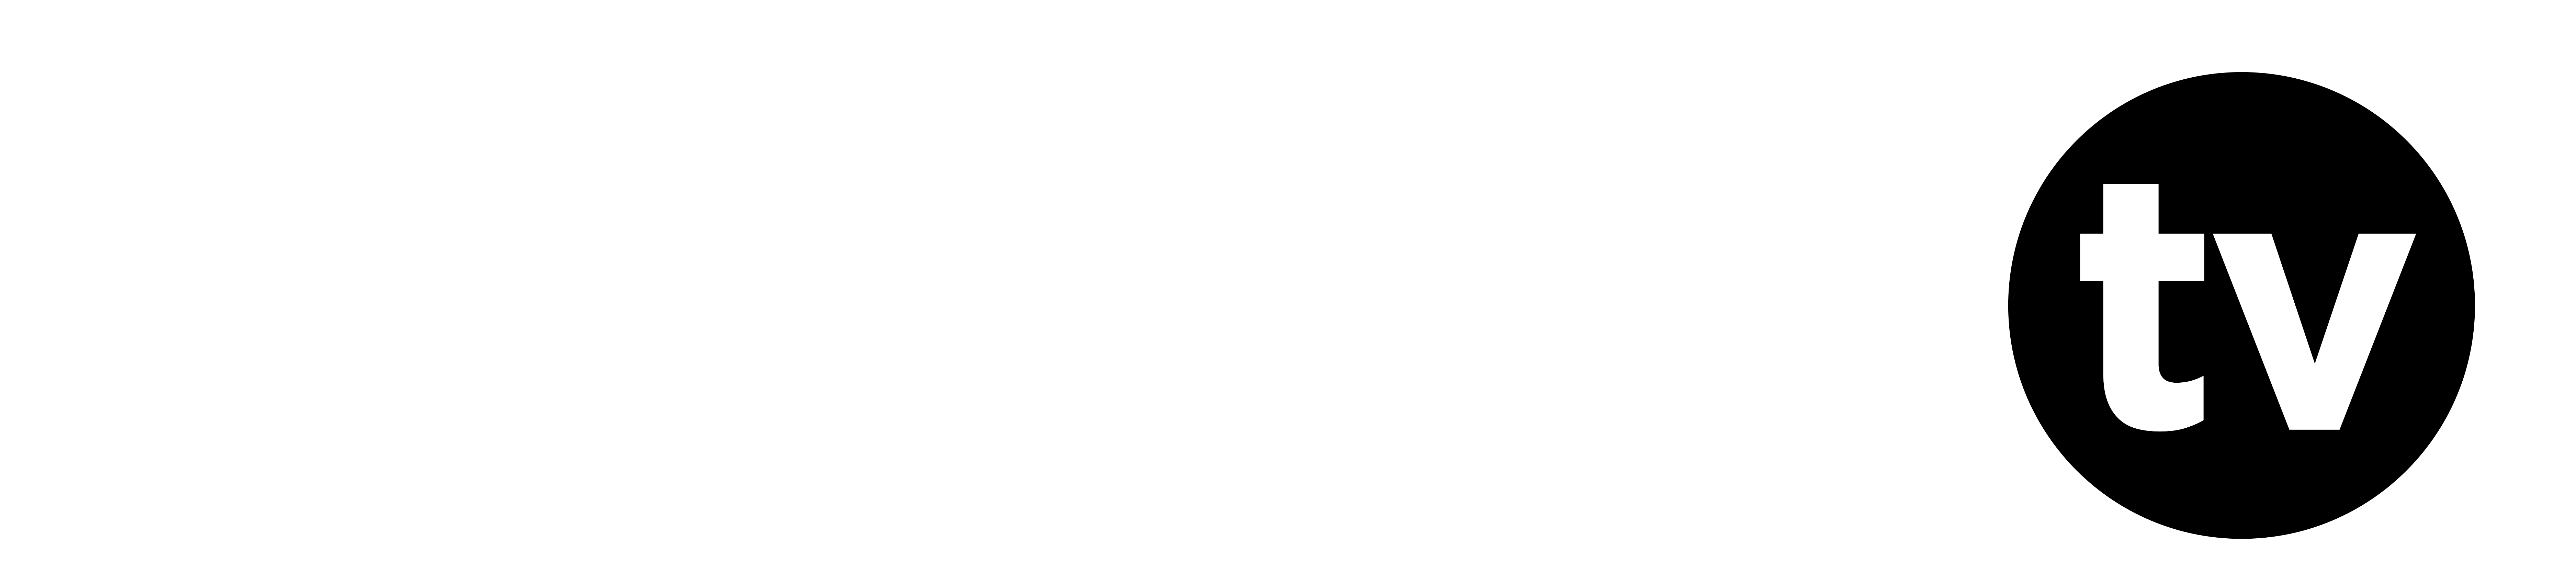 BlastTV-logo